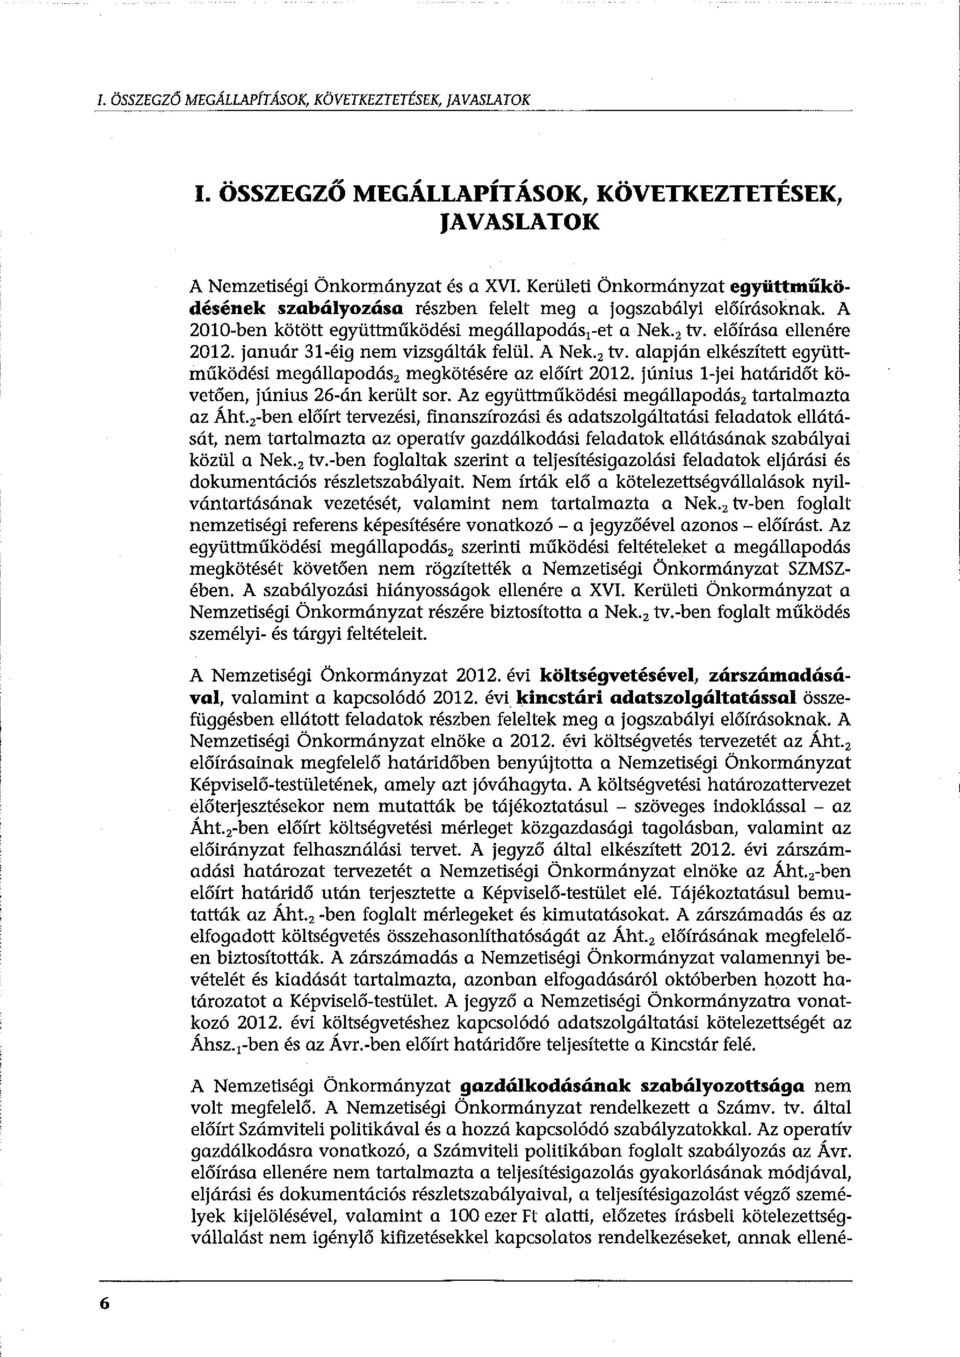 január 31-éig nem vizsgálták felül. A Nek.z tv. alapján elkészített együttműködési megállapodász megkötésére az előírt 2012. június l-jei határidőt követően, június 26-án került sor.